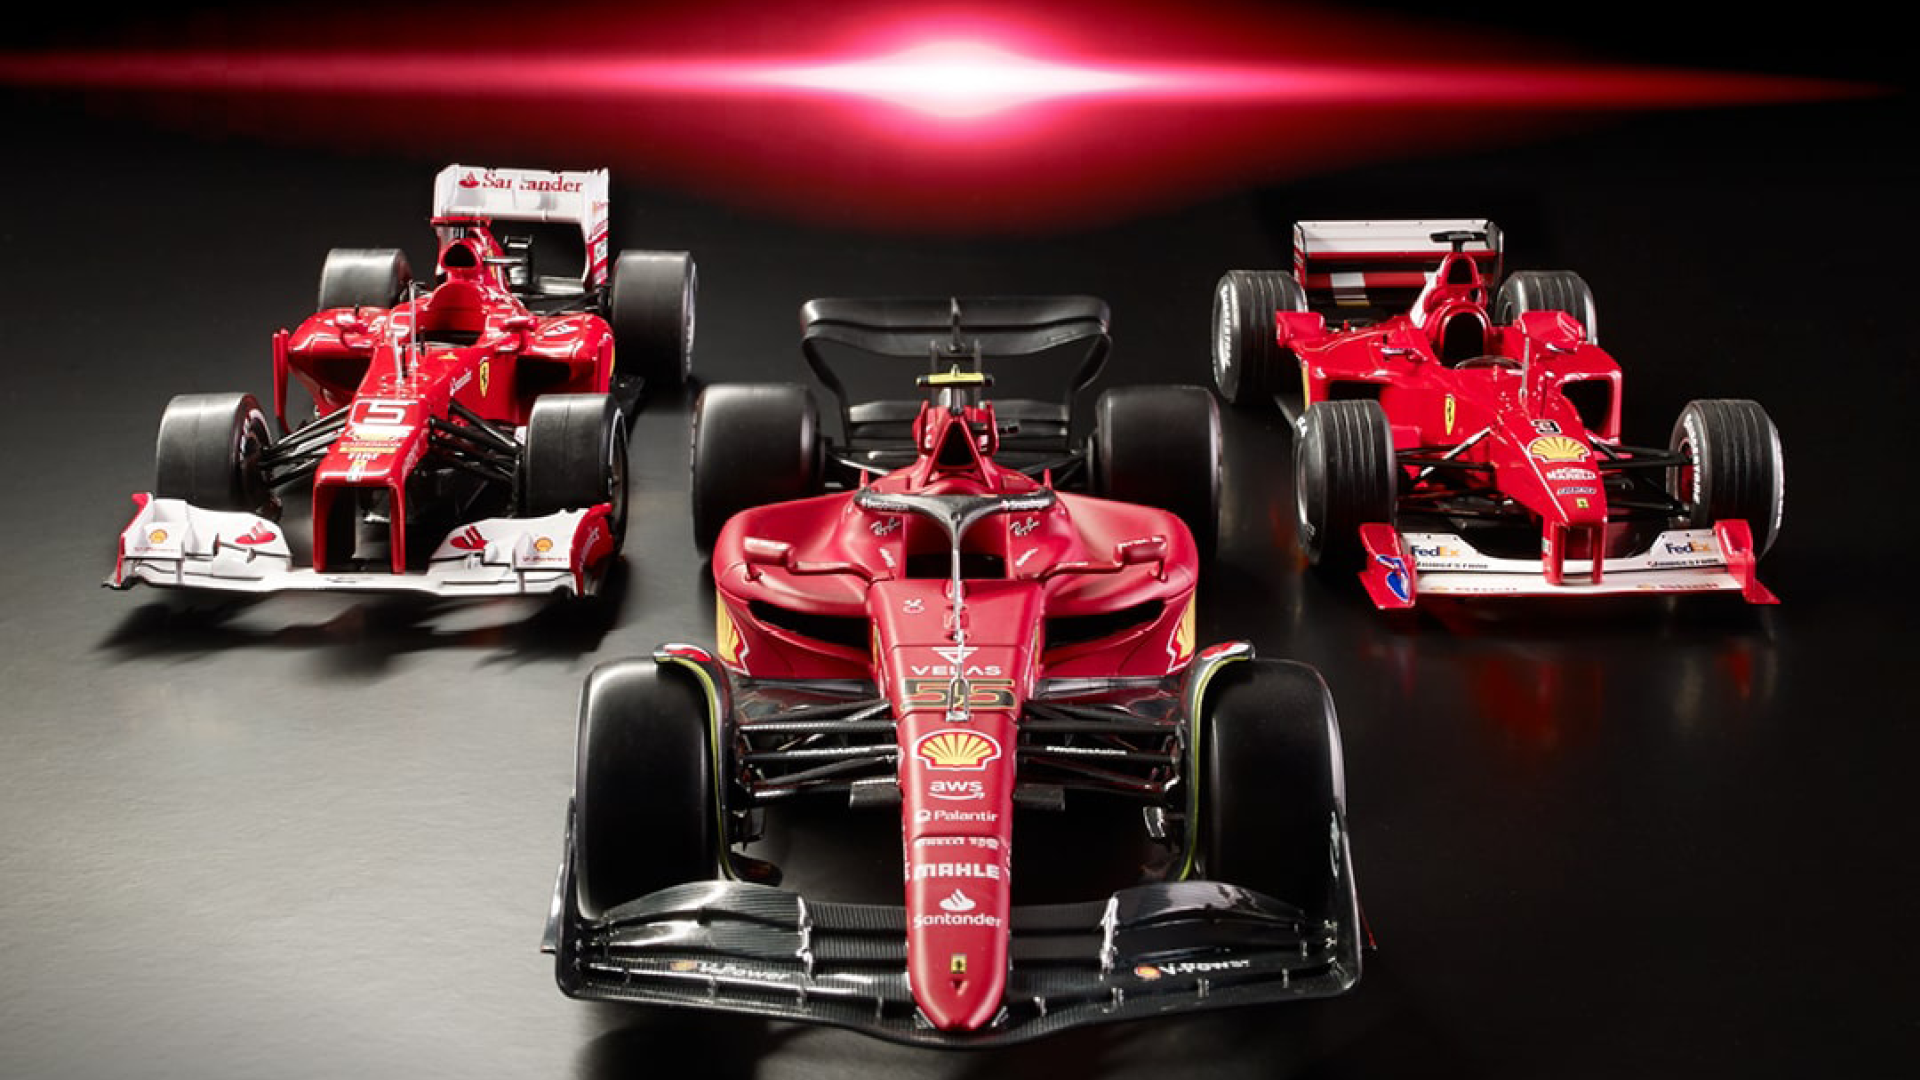 DeAgostini Launches Legends of Ferrari F1 Replica Race Car